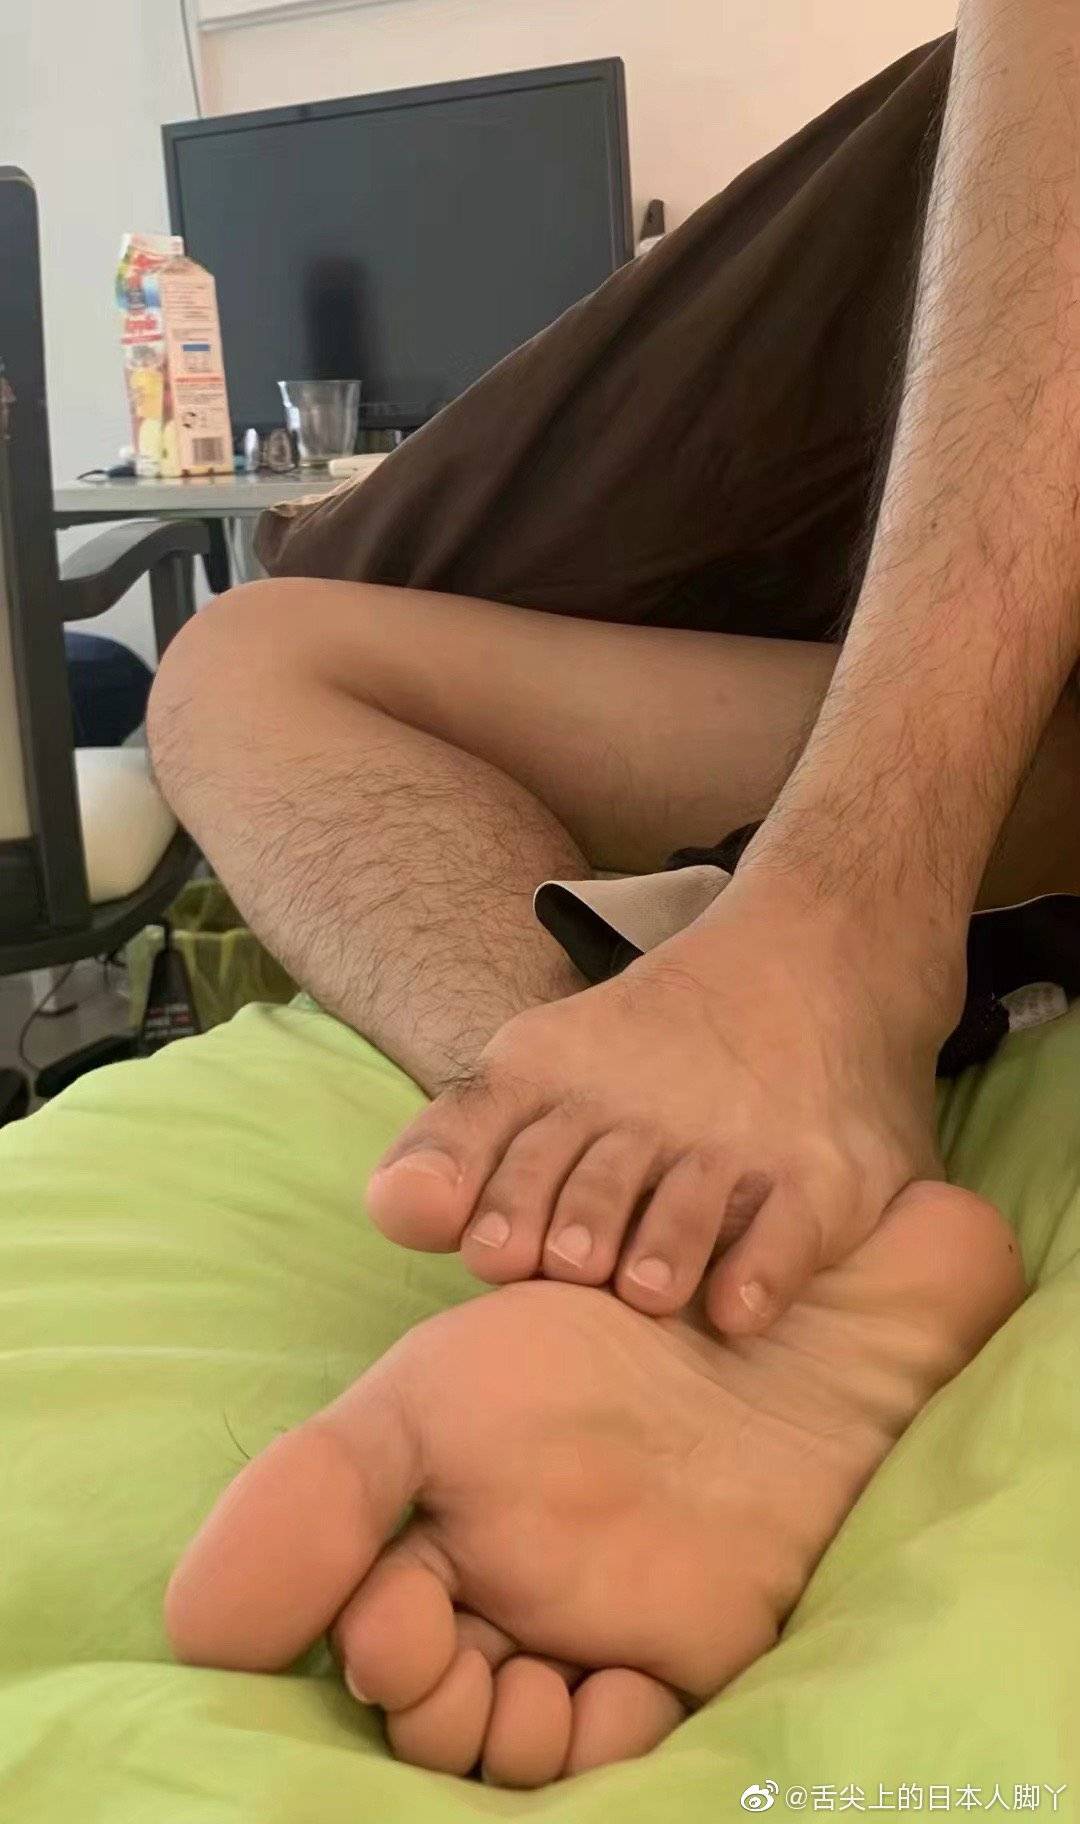 Licking feet boyfriend